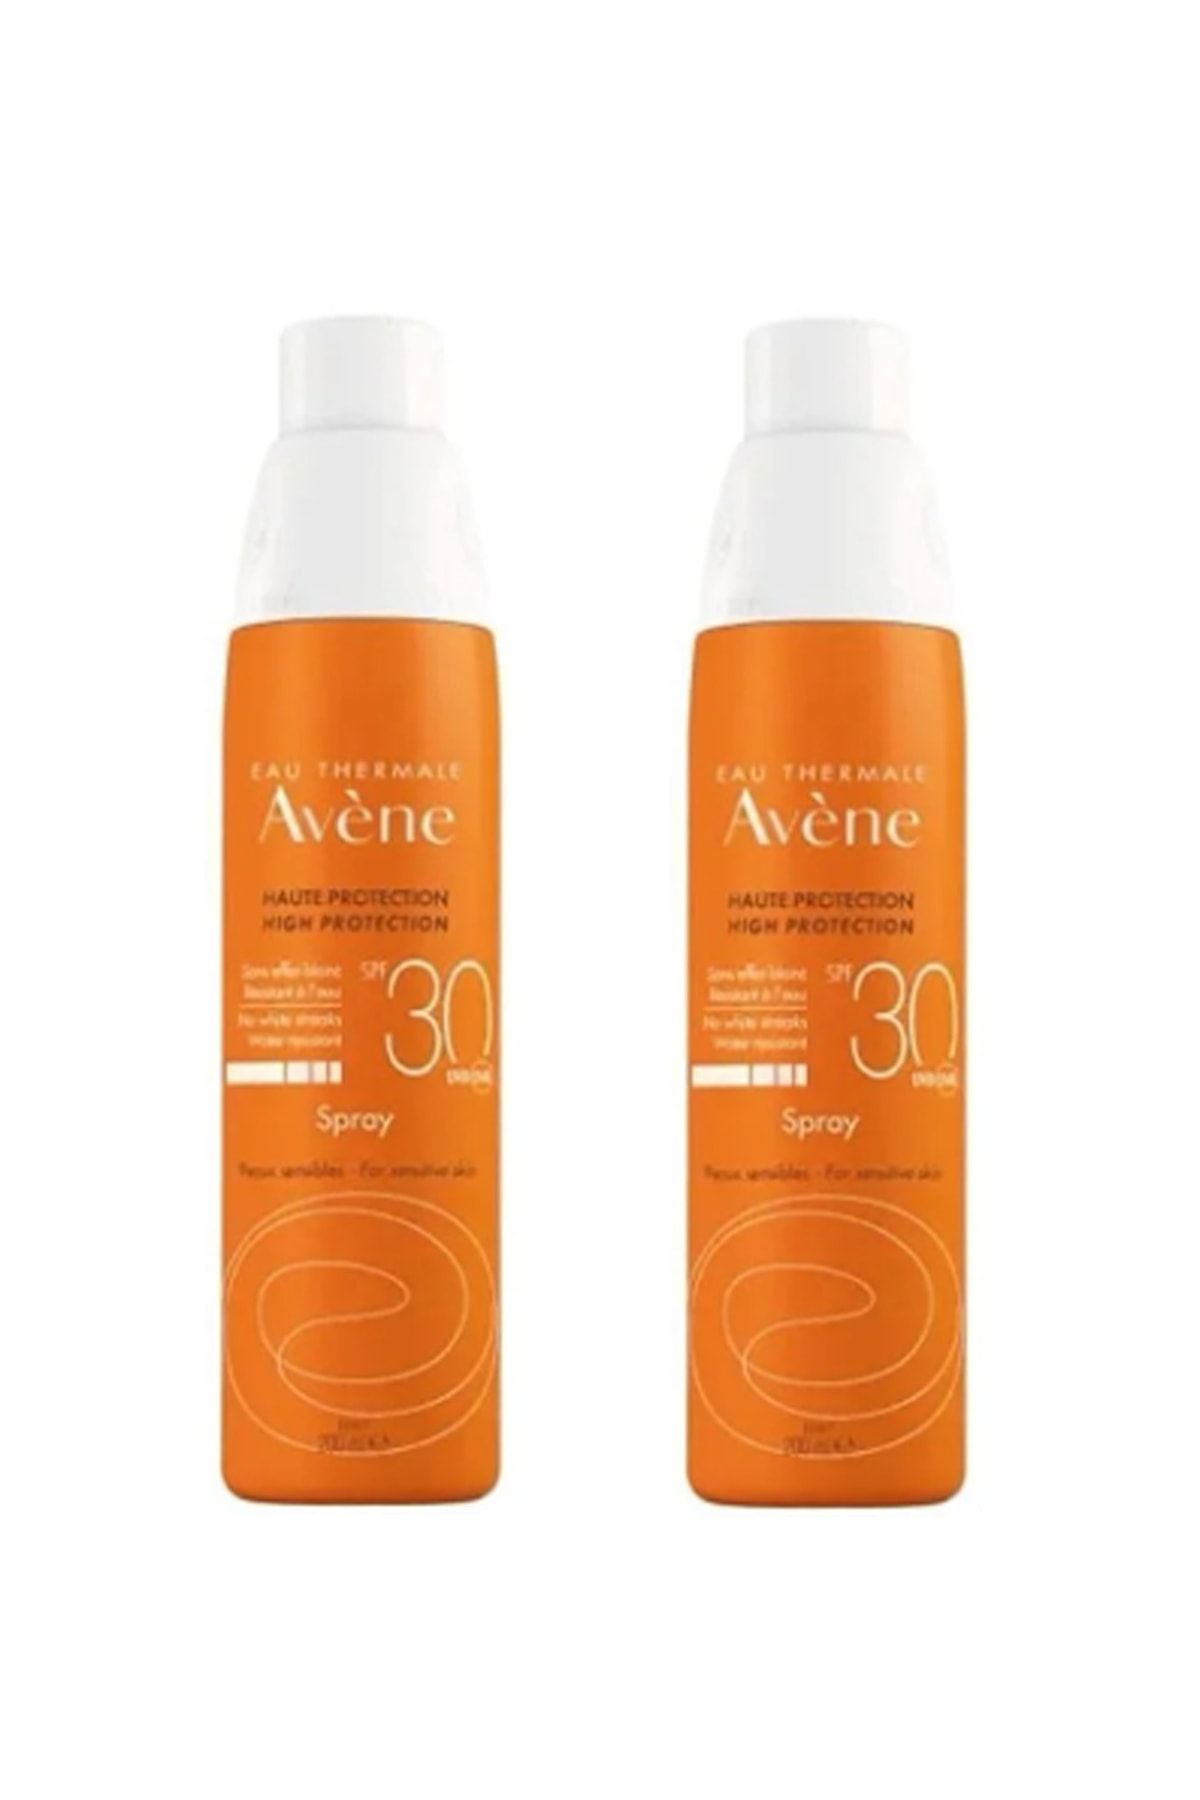 Avene Spray SPF 30+ Tüm Cilt Tipleri İçin Kullanıma Uygun Güneşten Koruyucu Vücut Spreyi 200 ml